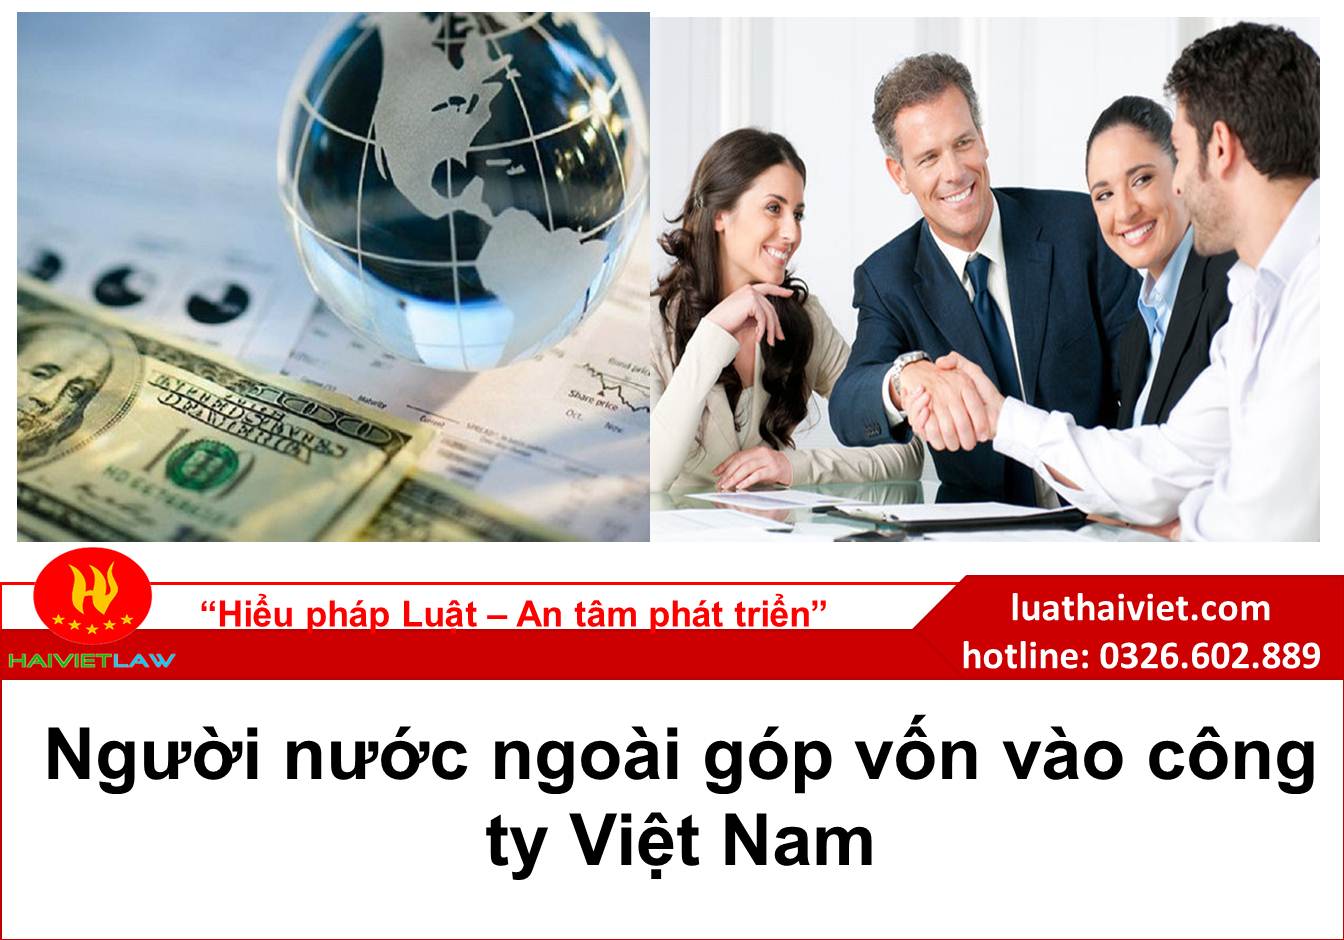 Người nước ngoài góp vốn vào công ty Việt Nam